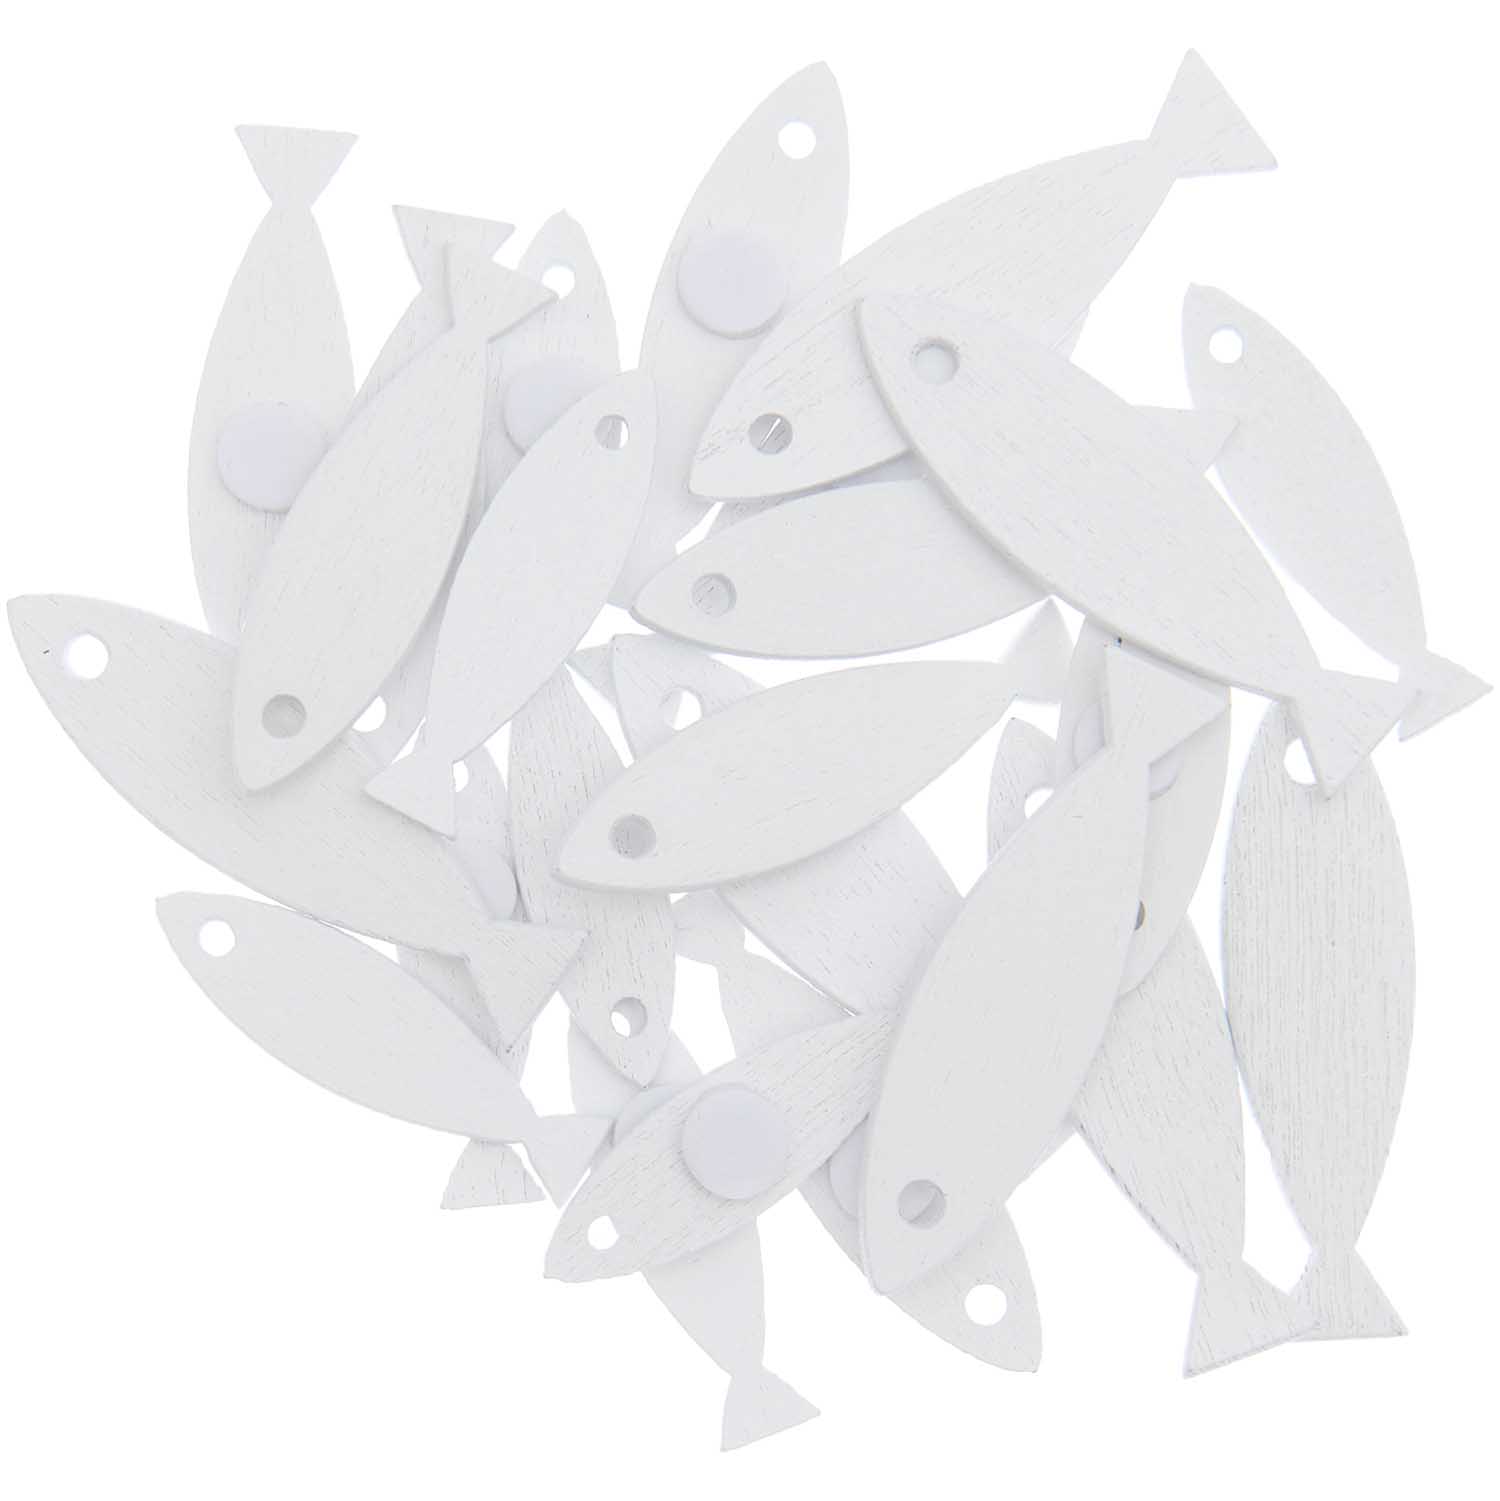 Holz-Streuteile Fische weiß mit Klebepunkt 8,5x30mm - 11,5x40mm 24 Stück 